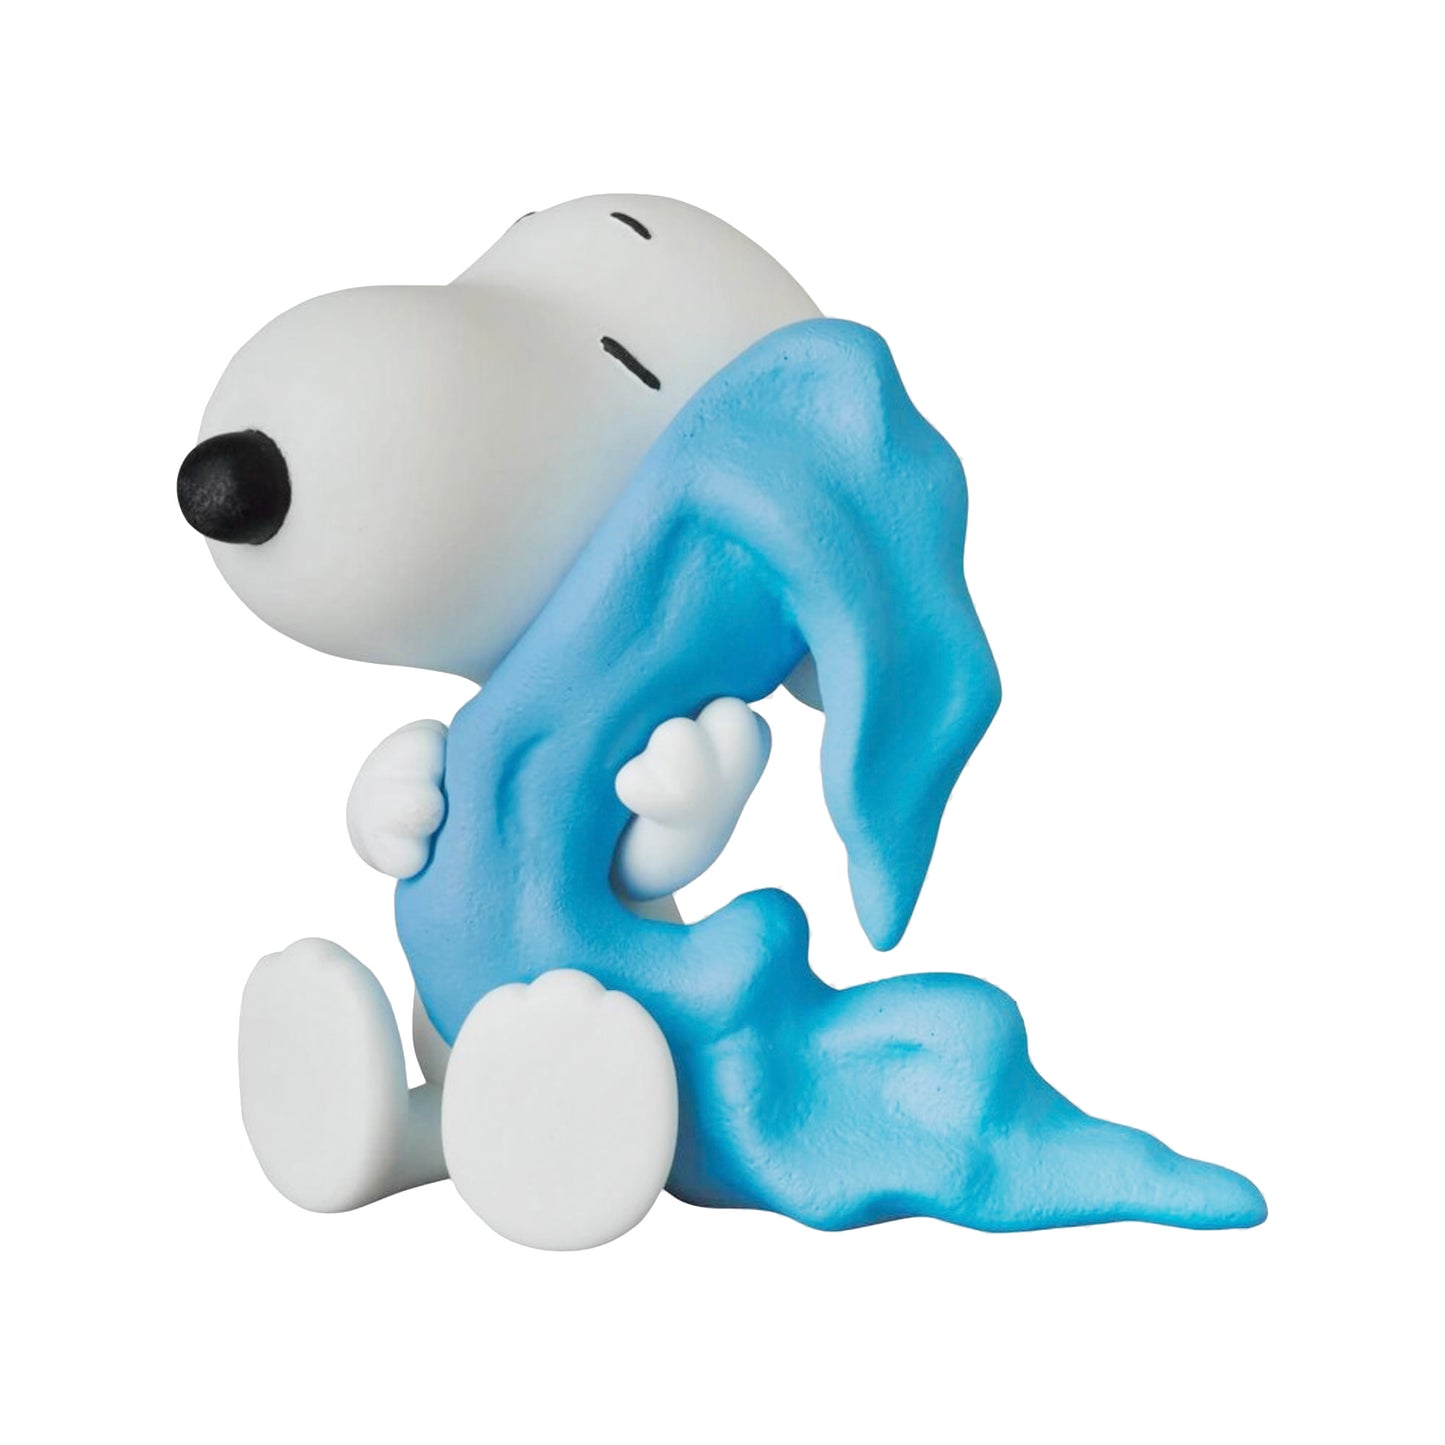 MEDICOM TOY: UDF Peanuts Series 12 - Snoopy with Linus Blanket Figure